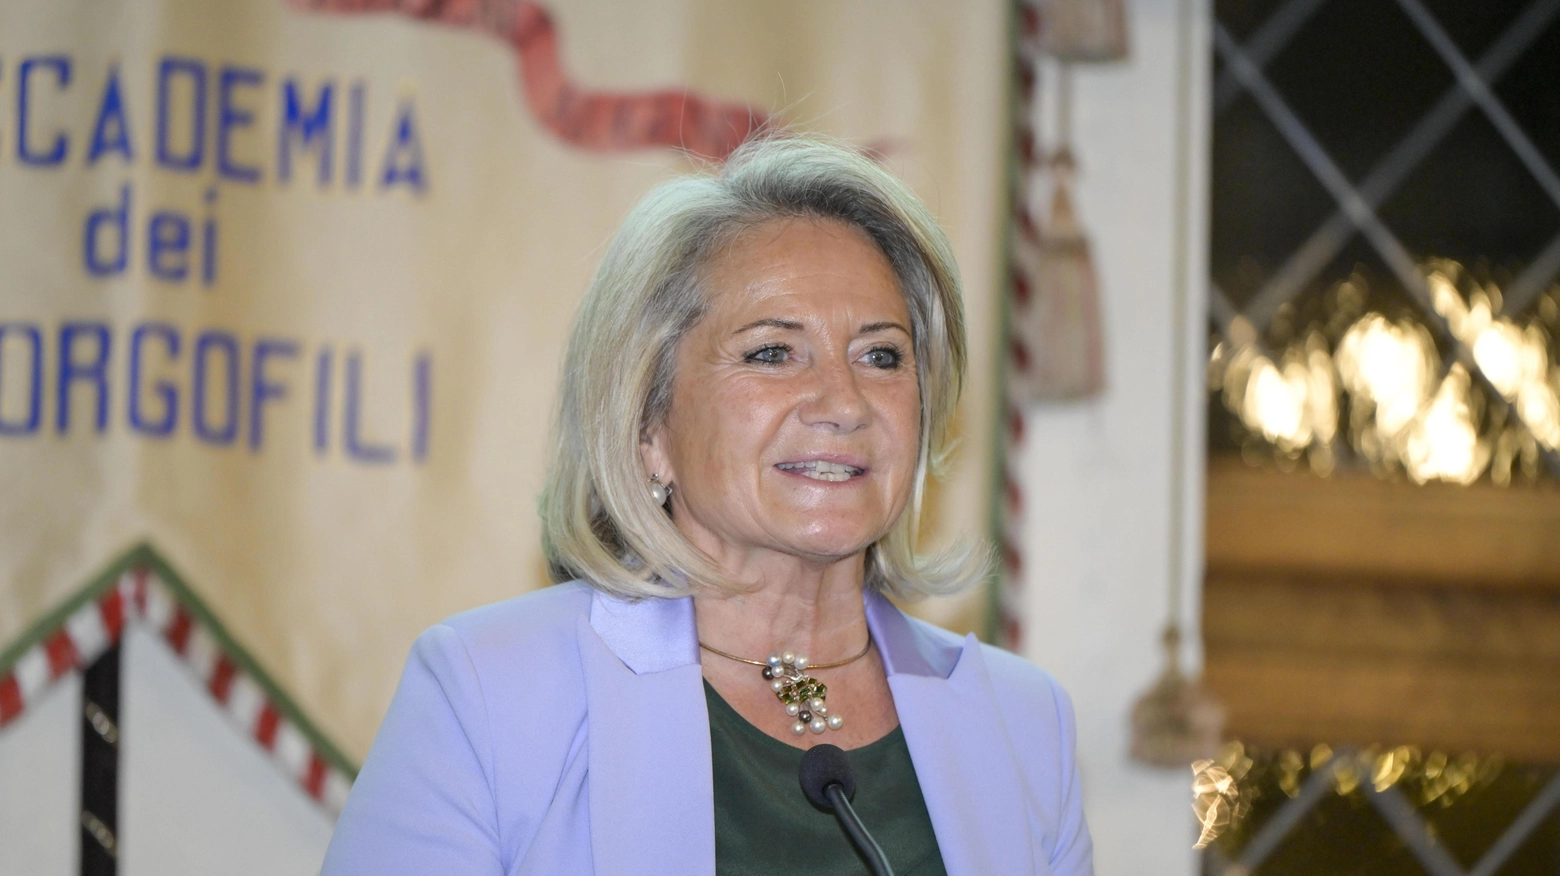 La vicepresidente Oliva Scaramuzzi e i progetti per il pianeta donna e non solo "Dobbiamo andare oltre le discriminazioni e le esasperazioni tra i generi".